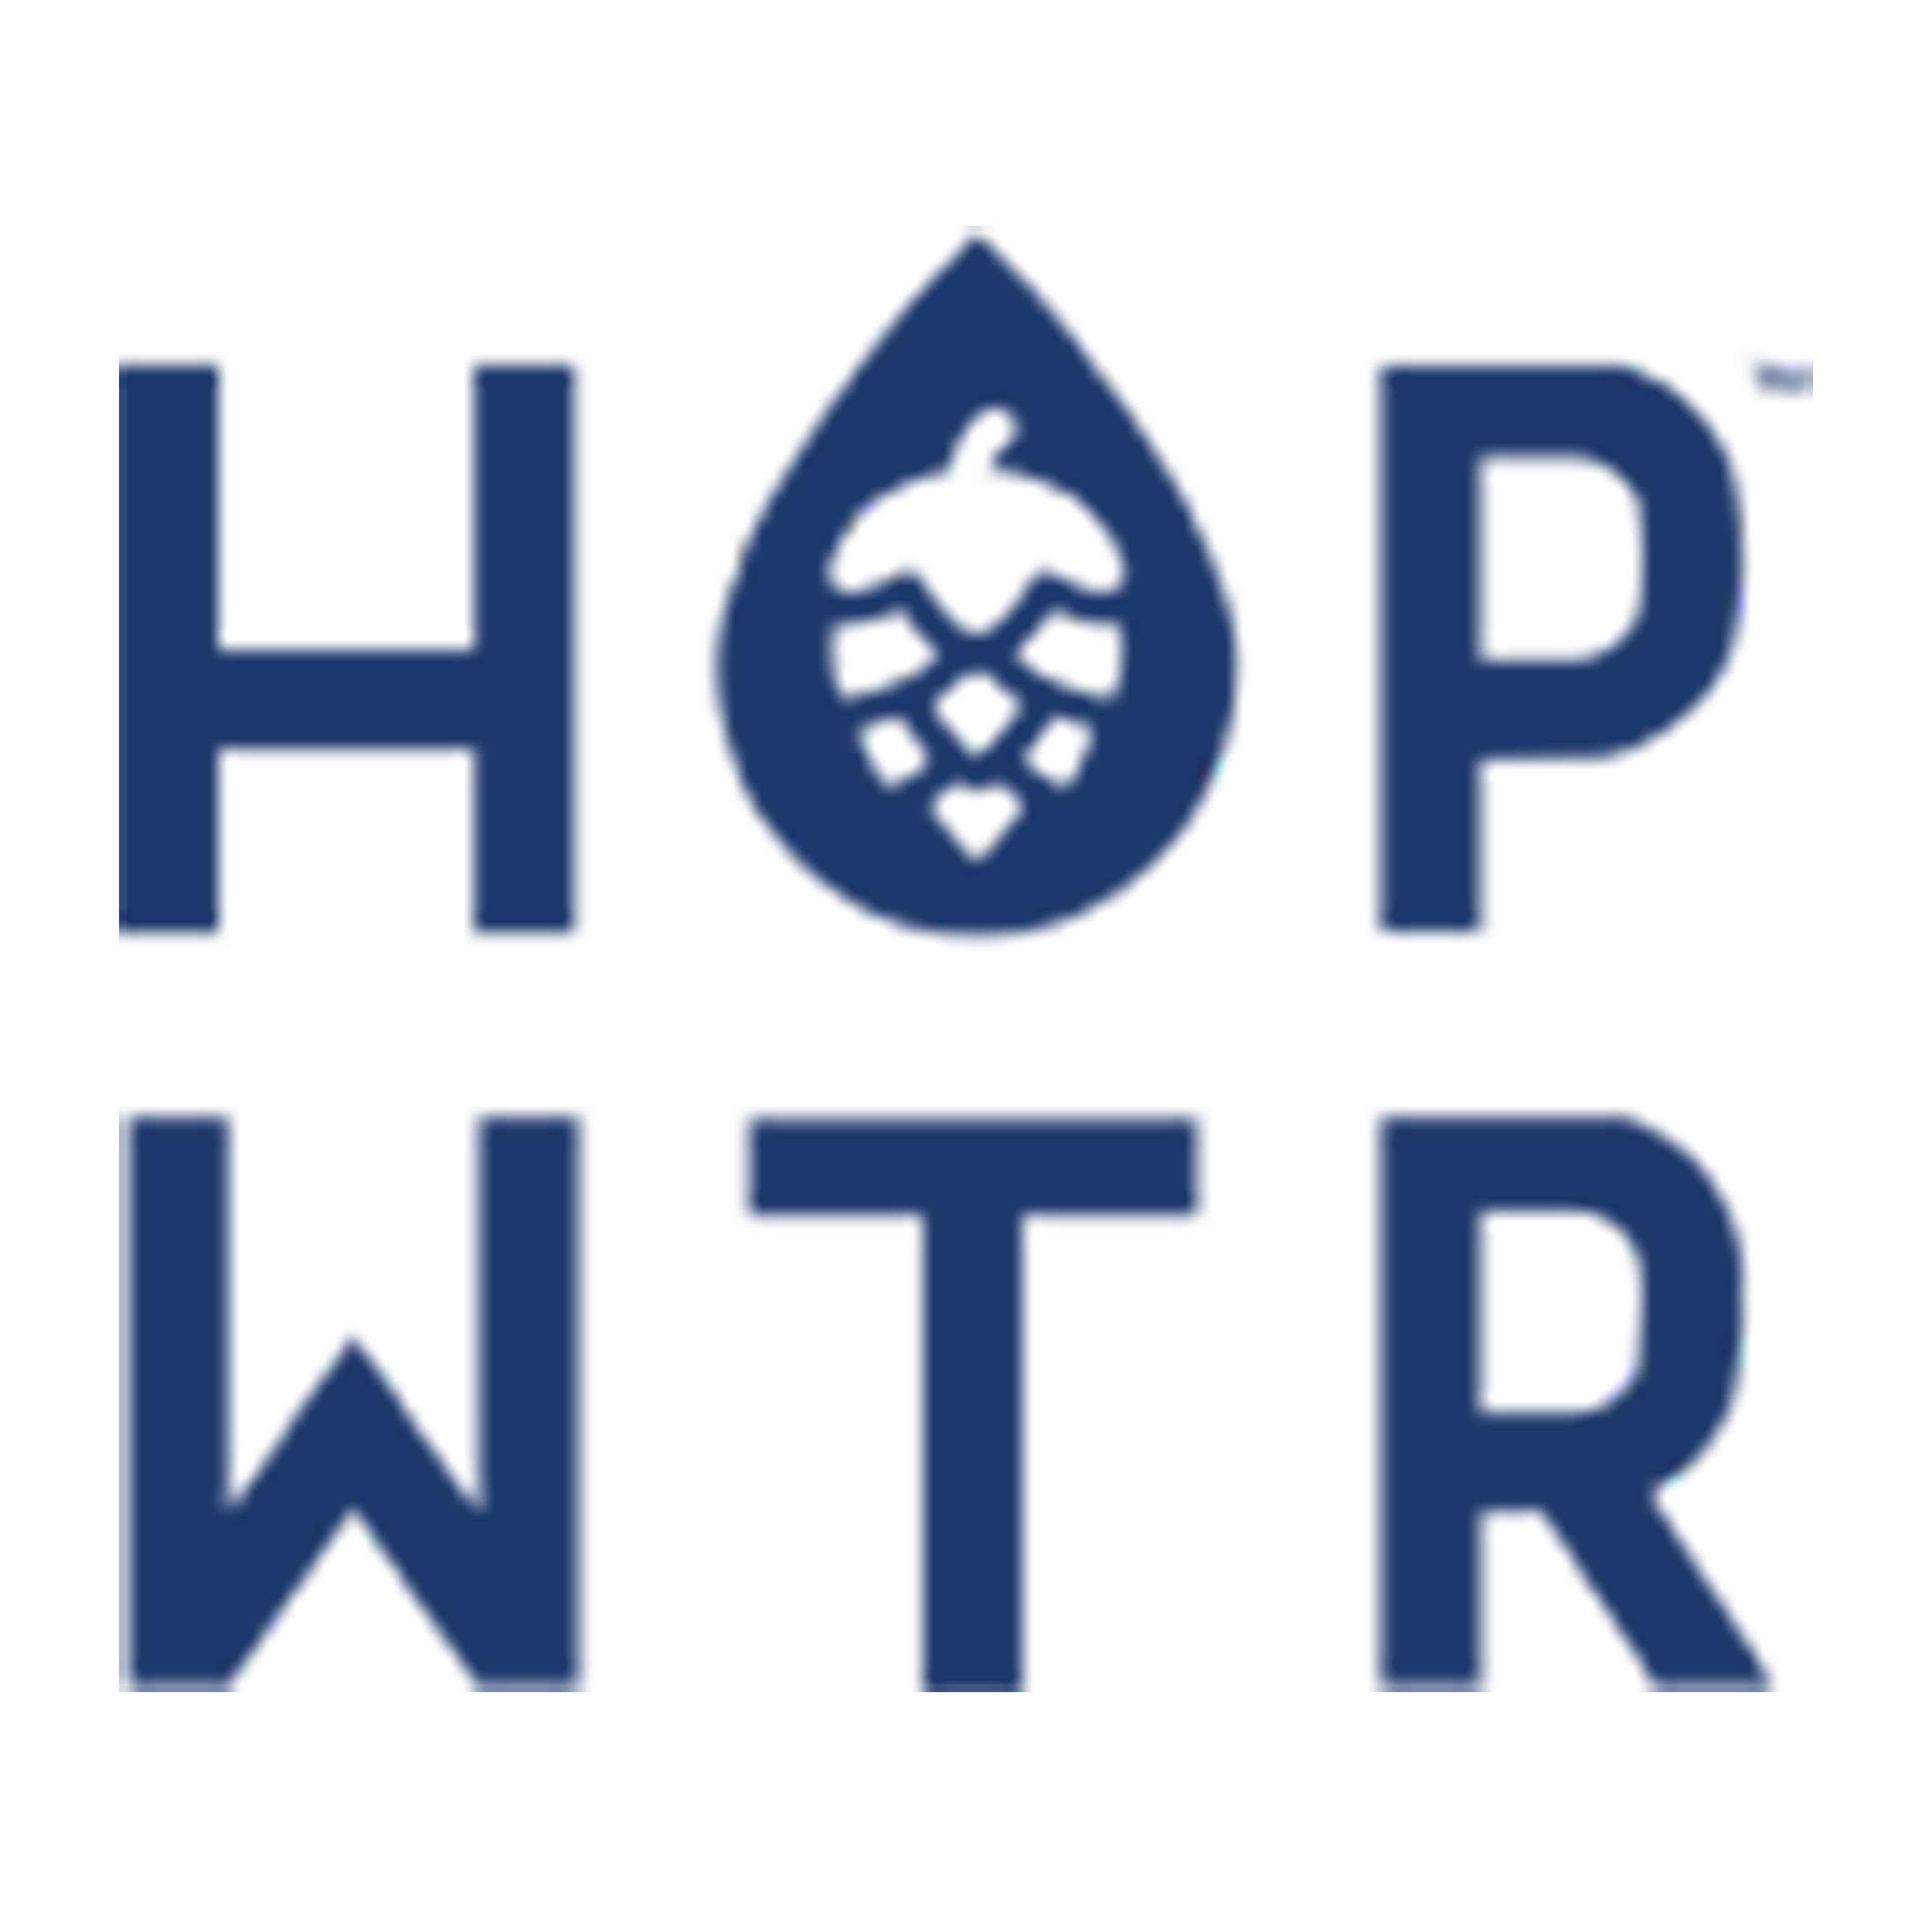 HOP WTR logo